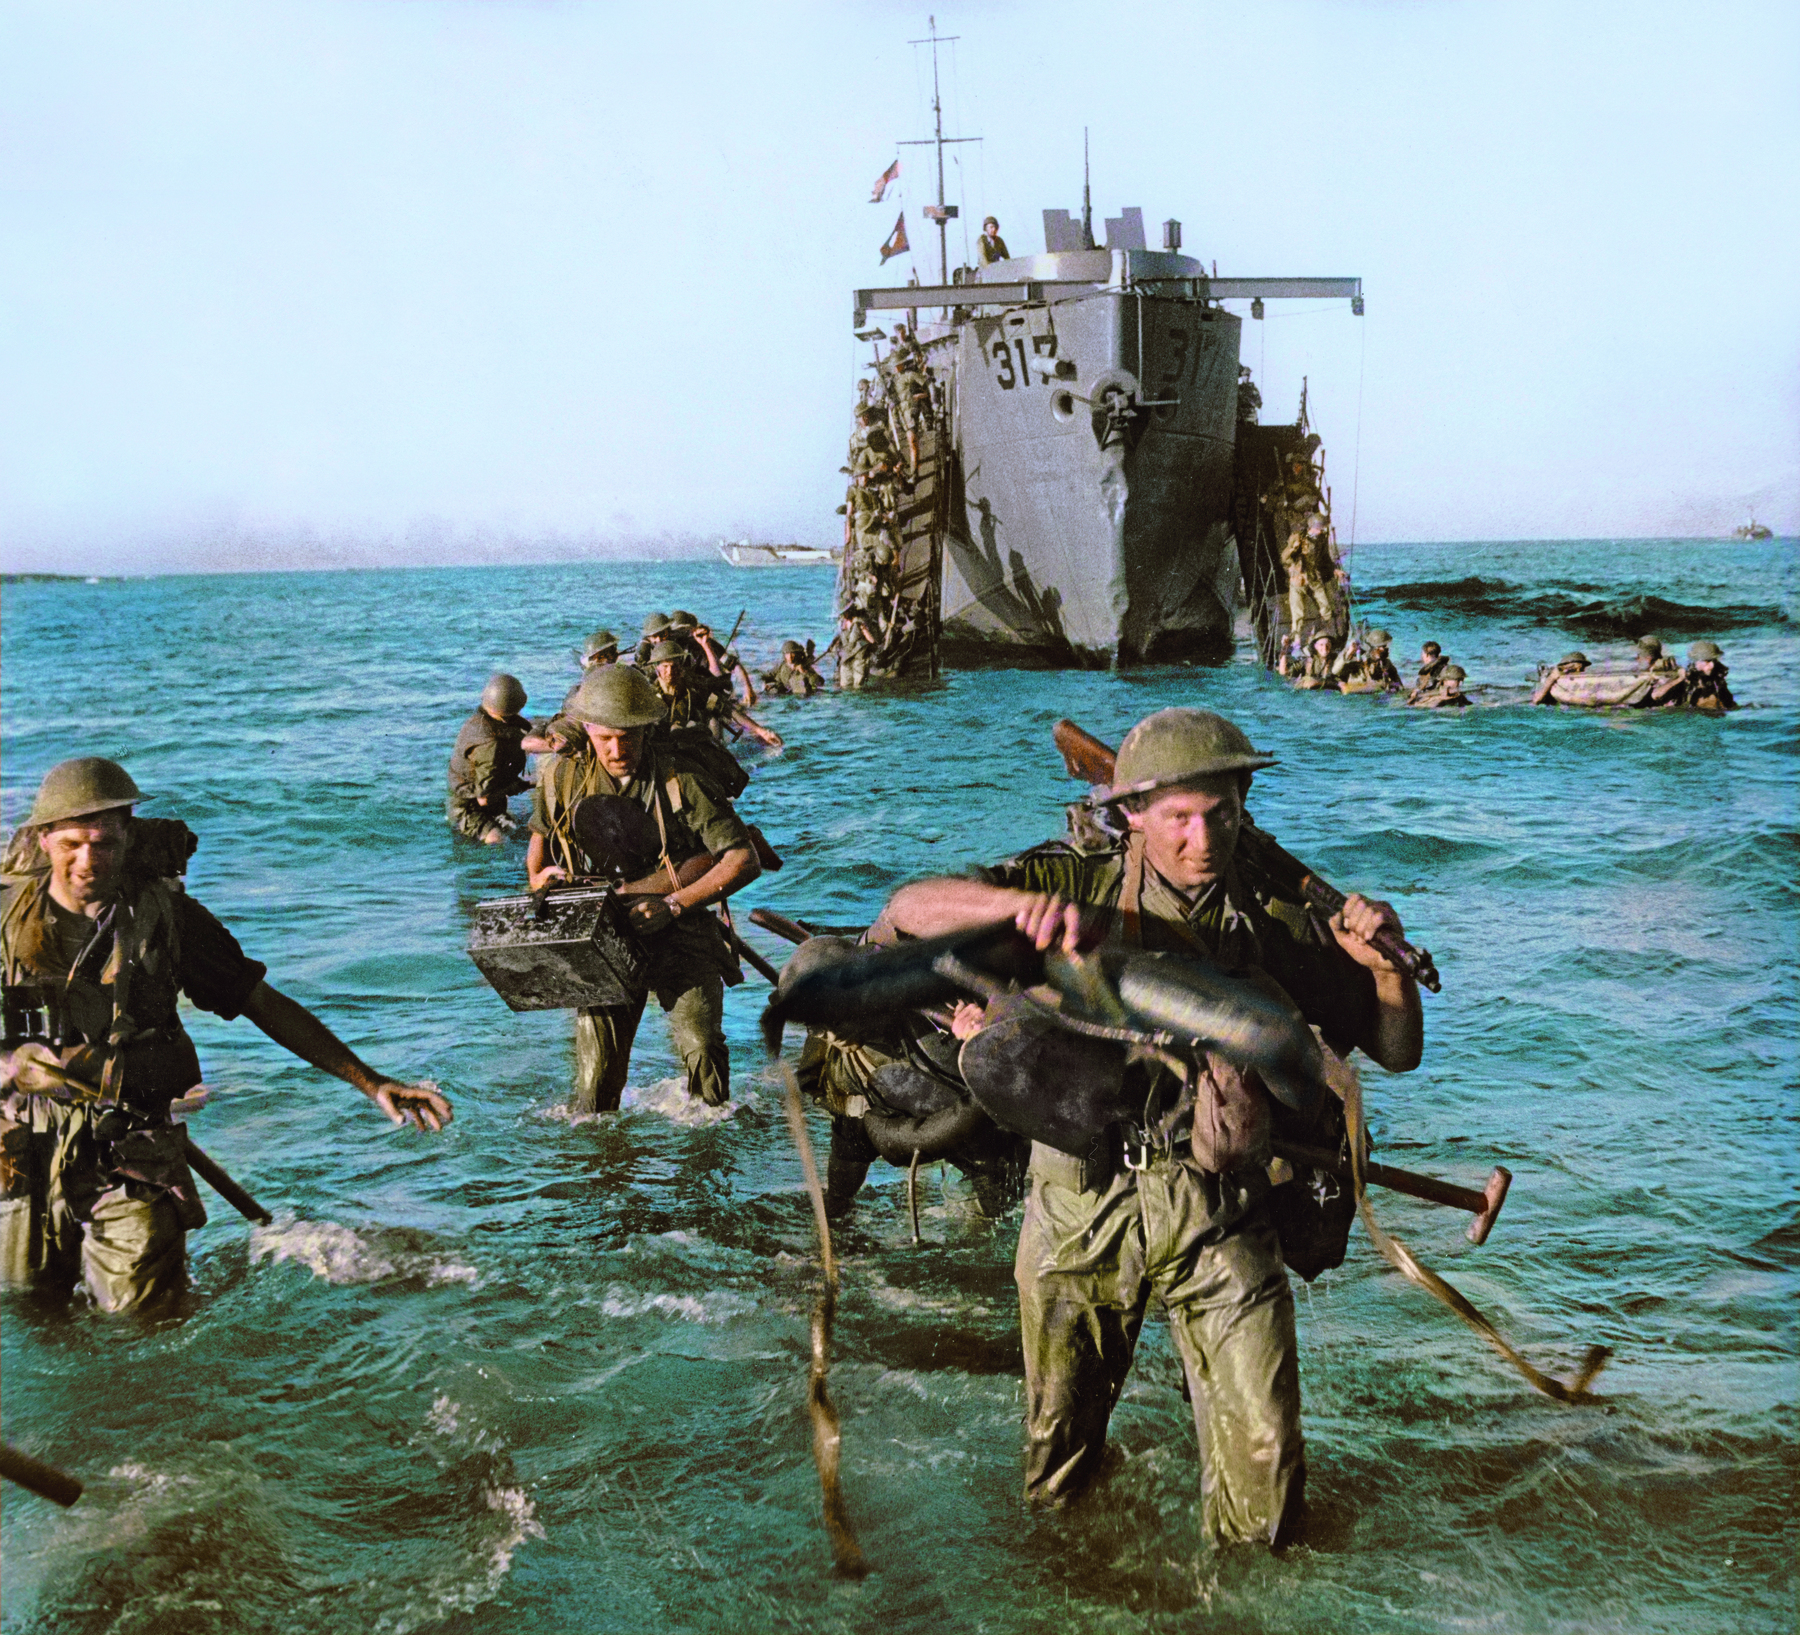 Fotografia. Soldados fardados, com água do mar até a altura dos joelhos, carregando armas, equipamentos e munição. Em segundo plano, sobre as águas, um navio de guerra de casco acinzentado.